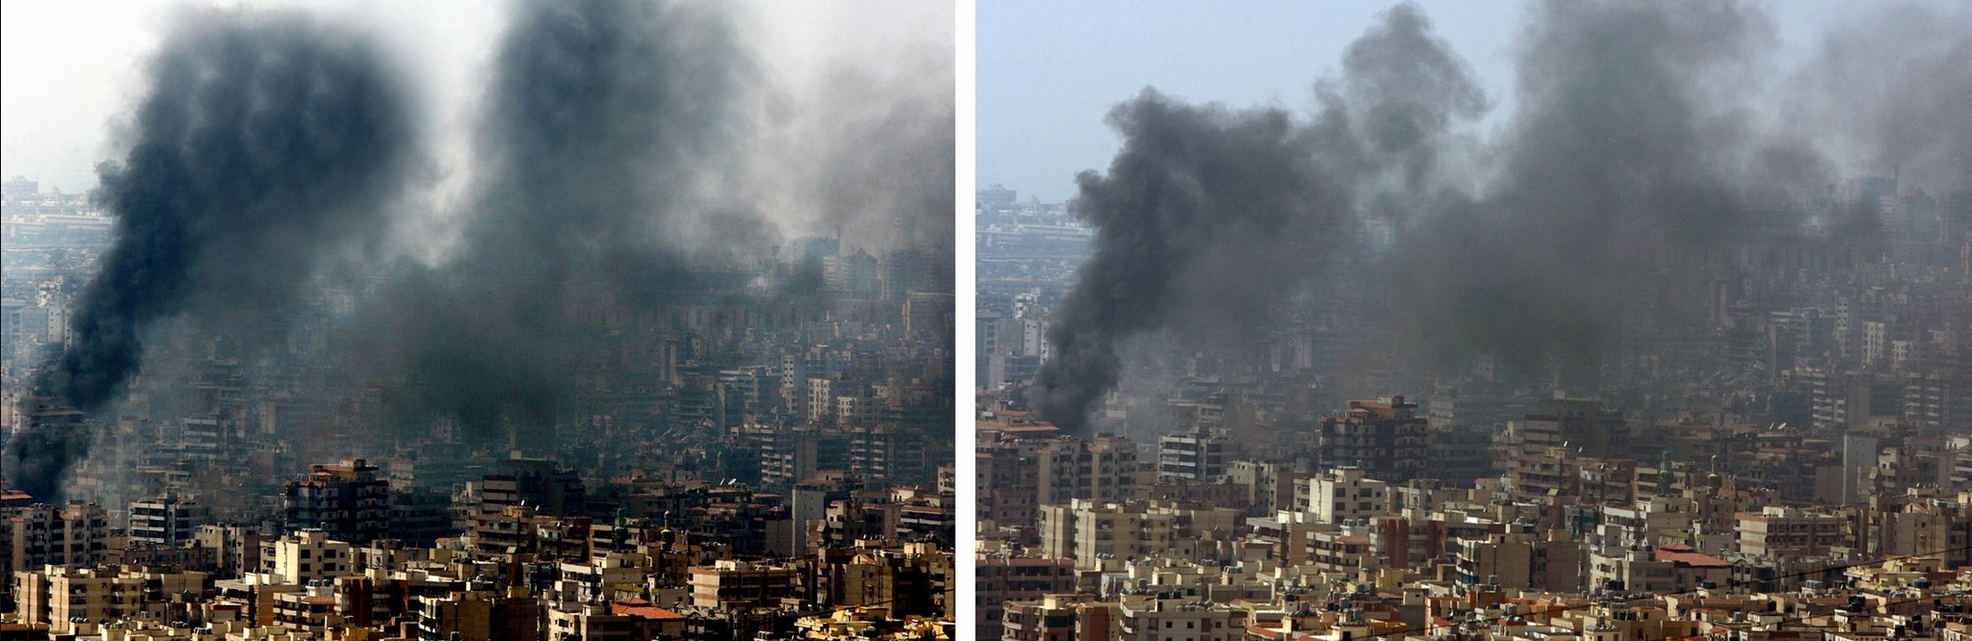 رویترز پس از آنکه شواهد کافی درخصوص دستکاری‌شدن عکسی از دودهای حاصل از بمباران حمله‌ی هوایی اسرائیل در حومه‌ی بیروت که در ۵ آگوست ۲۰۰۶ گرفته شده بود به دست آورد، عکس را حذف کرد. عکس‌ دست‌کاری‌شده در سمت چپ و عکس تحریف‌نشده در سمت راست قرار دارد. رویترز اعلام کرد که از هیچ‌یک از عکس‌های عکاس آزاد Adnan Hajj استفاده نخواهد کرد.</p>


<p>